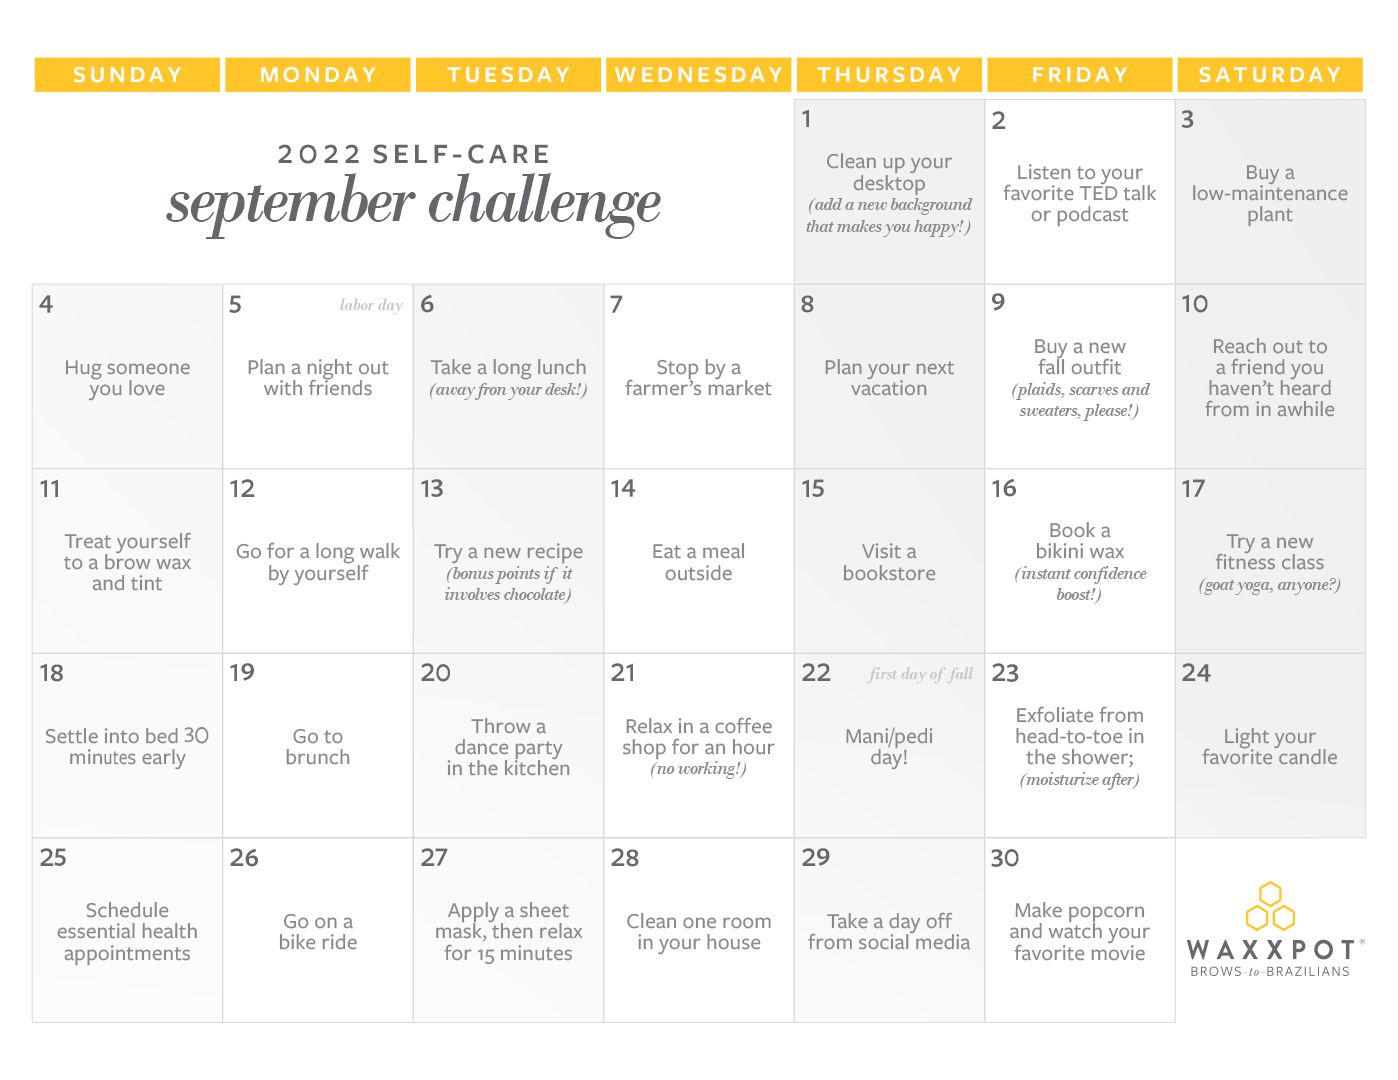 Waxxpot 2022 Self-Care September Challenge Calendar